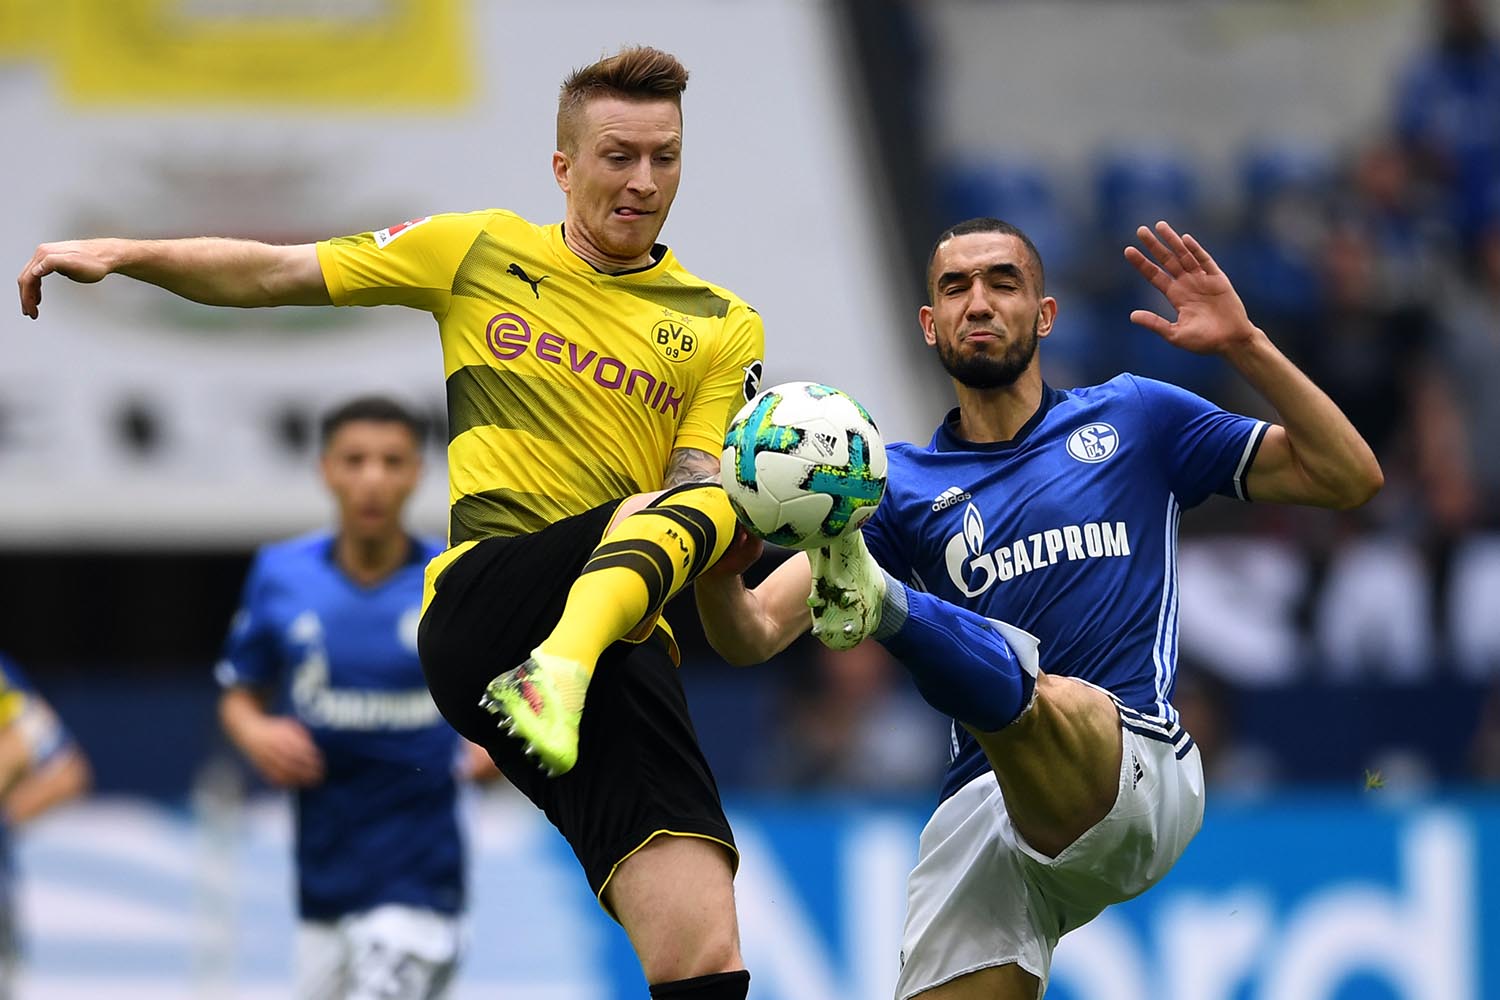 Kèo nhà cái Dortmund vs Schalke – Soi kèo bóng đá 20h30 ngày 27/4/2019